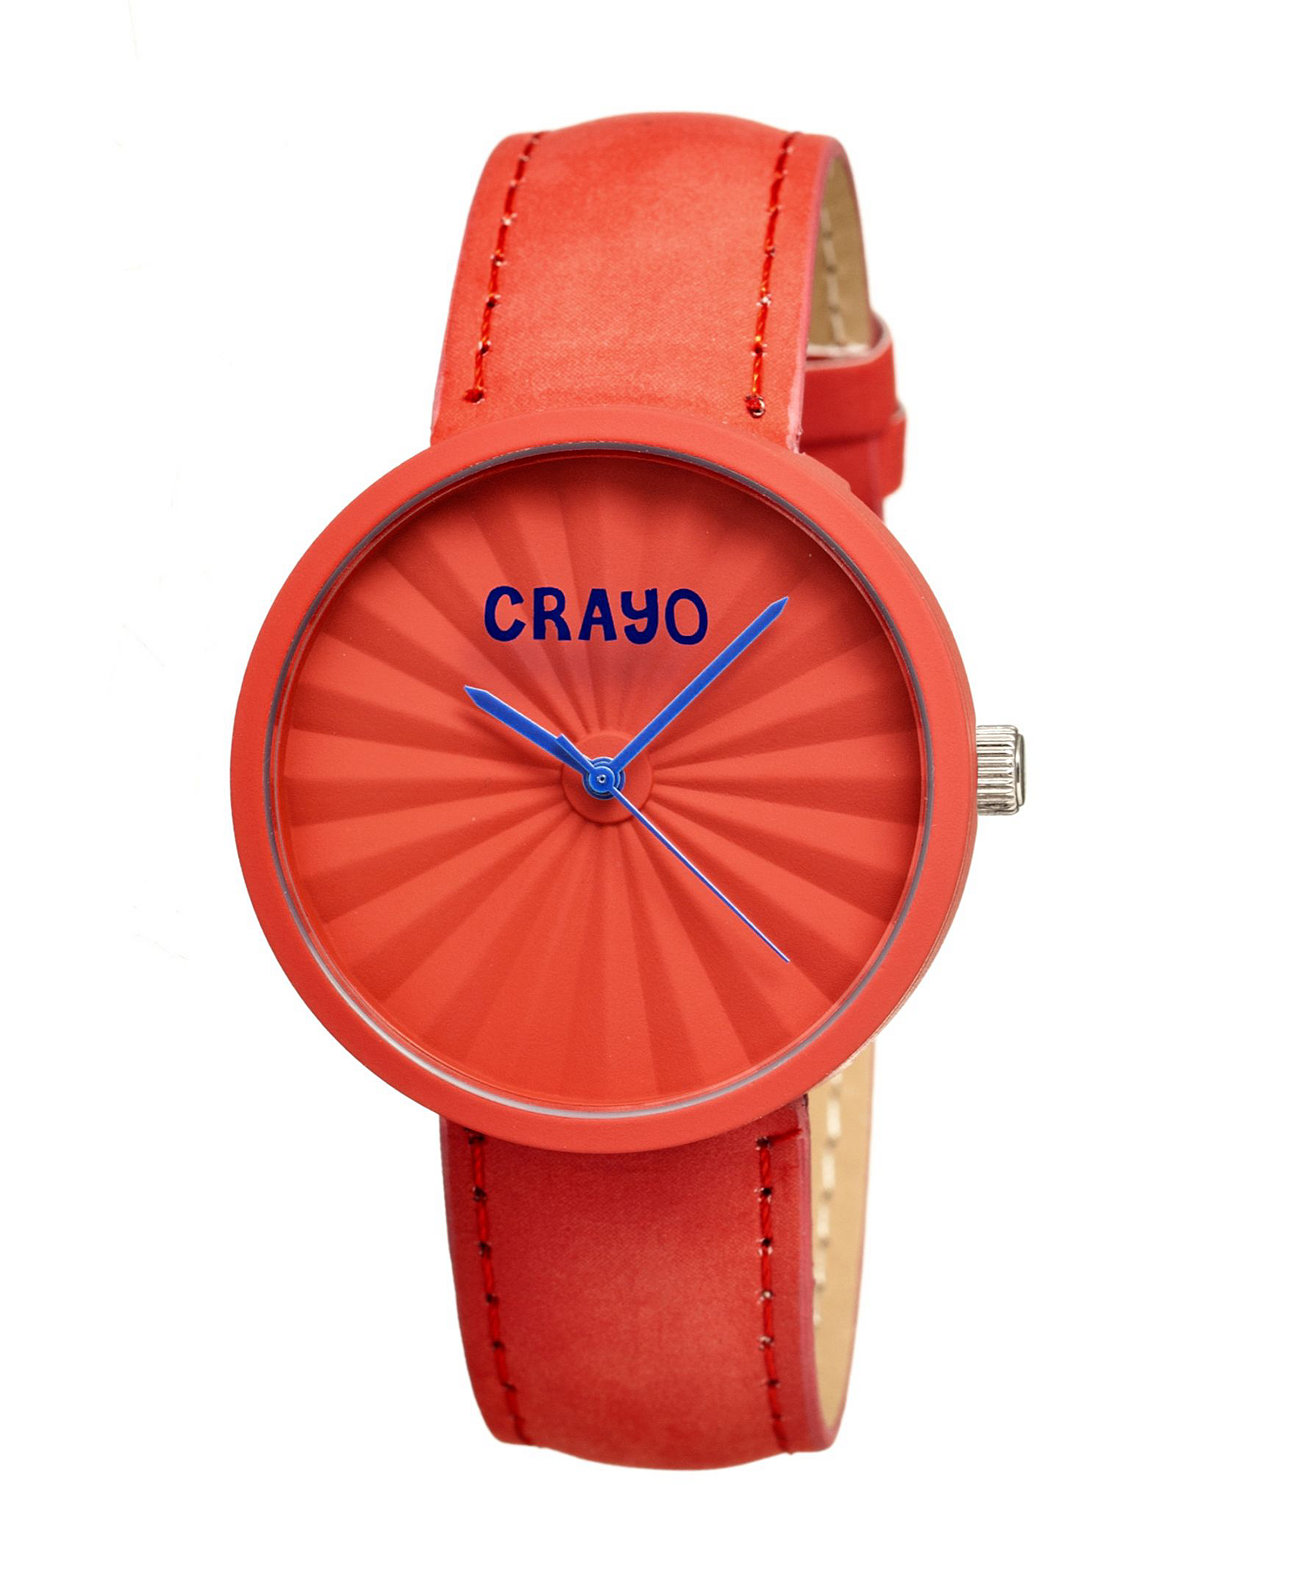 Часы унисекс со складками, красный ремешок из натуральной кожи, 40 мм Crayo